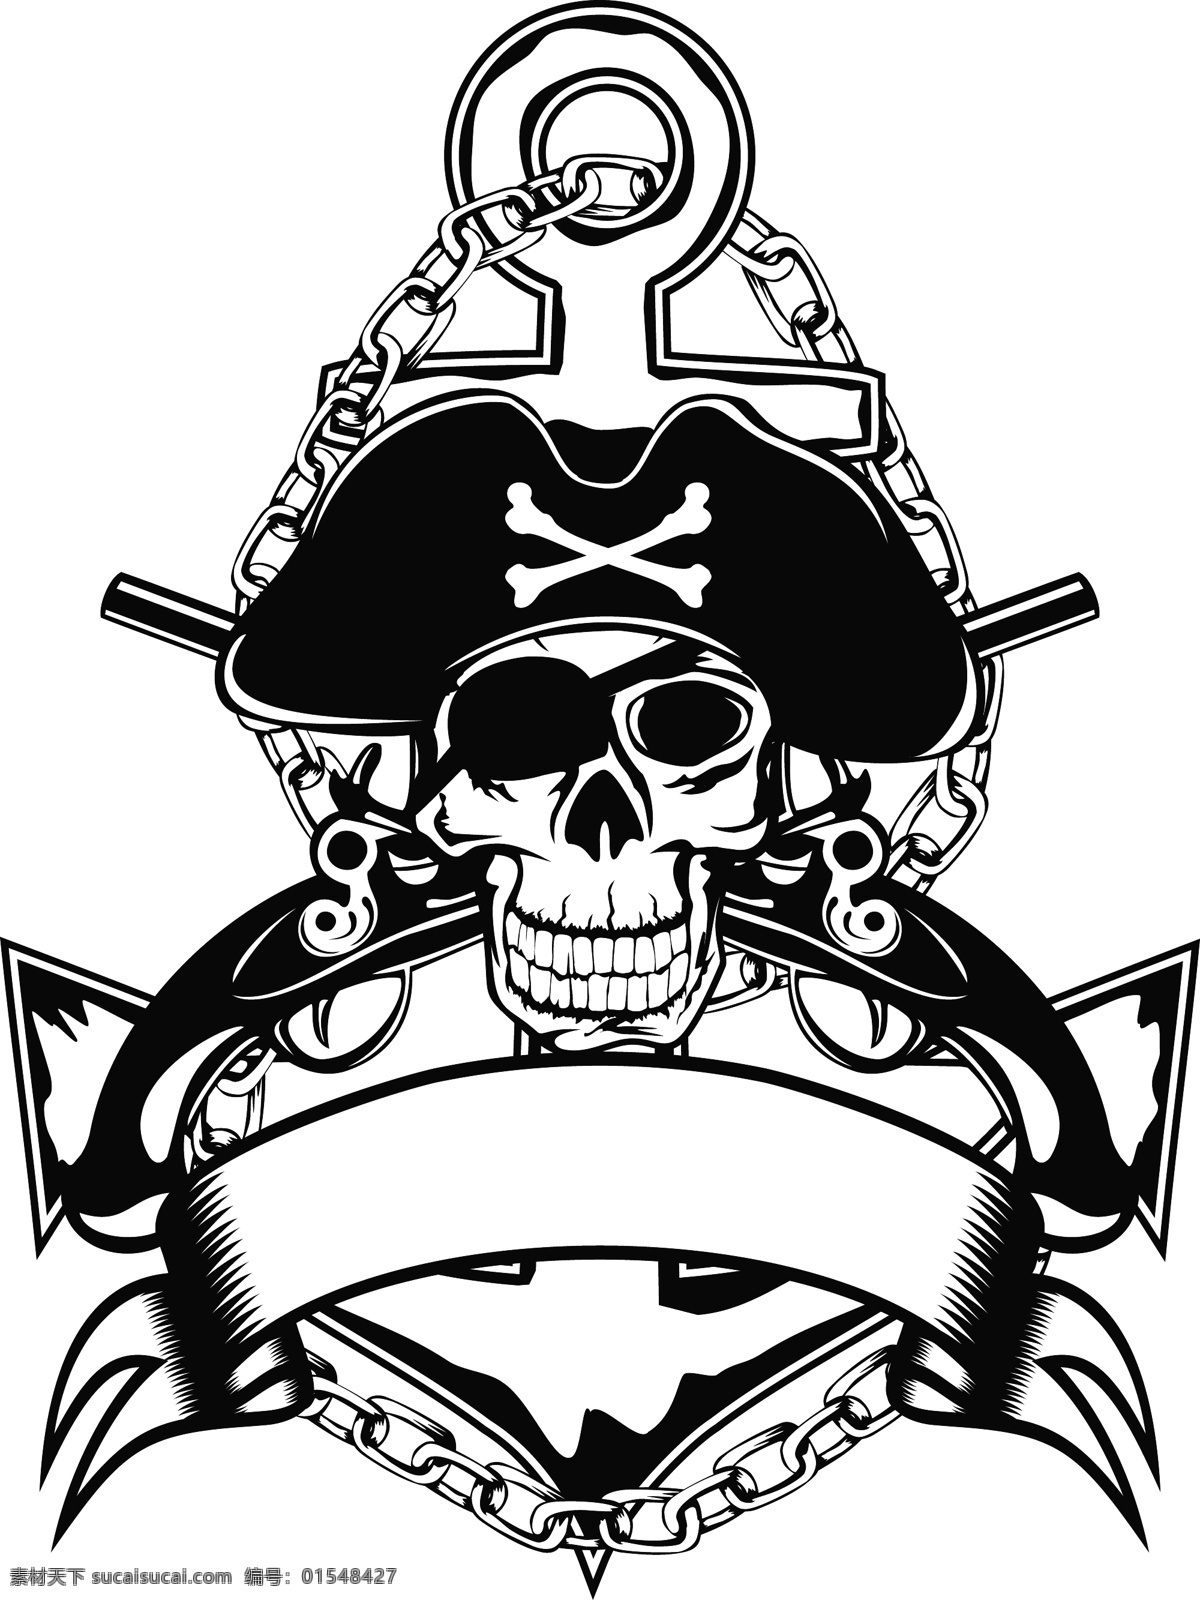 矢量 海盗 骷髅 徽标 矢量骷髅图案 头骨 海盗骷髅 矢量徽标 时尚潮流图案 其他艺术 文化艺术 矢量素材 白色